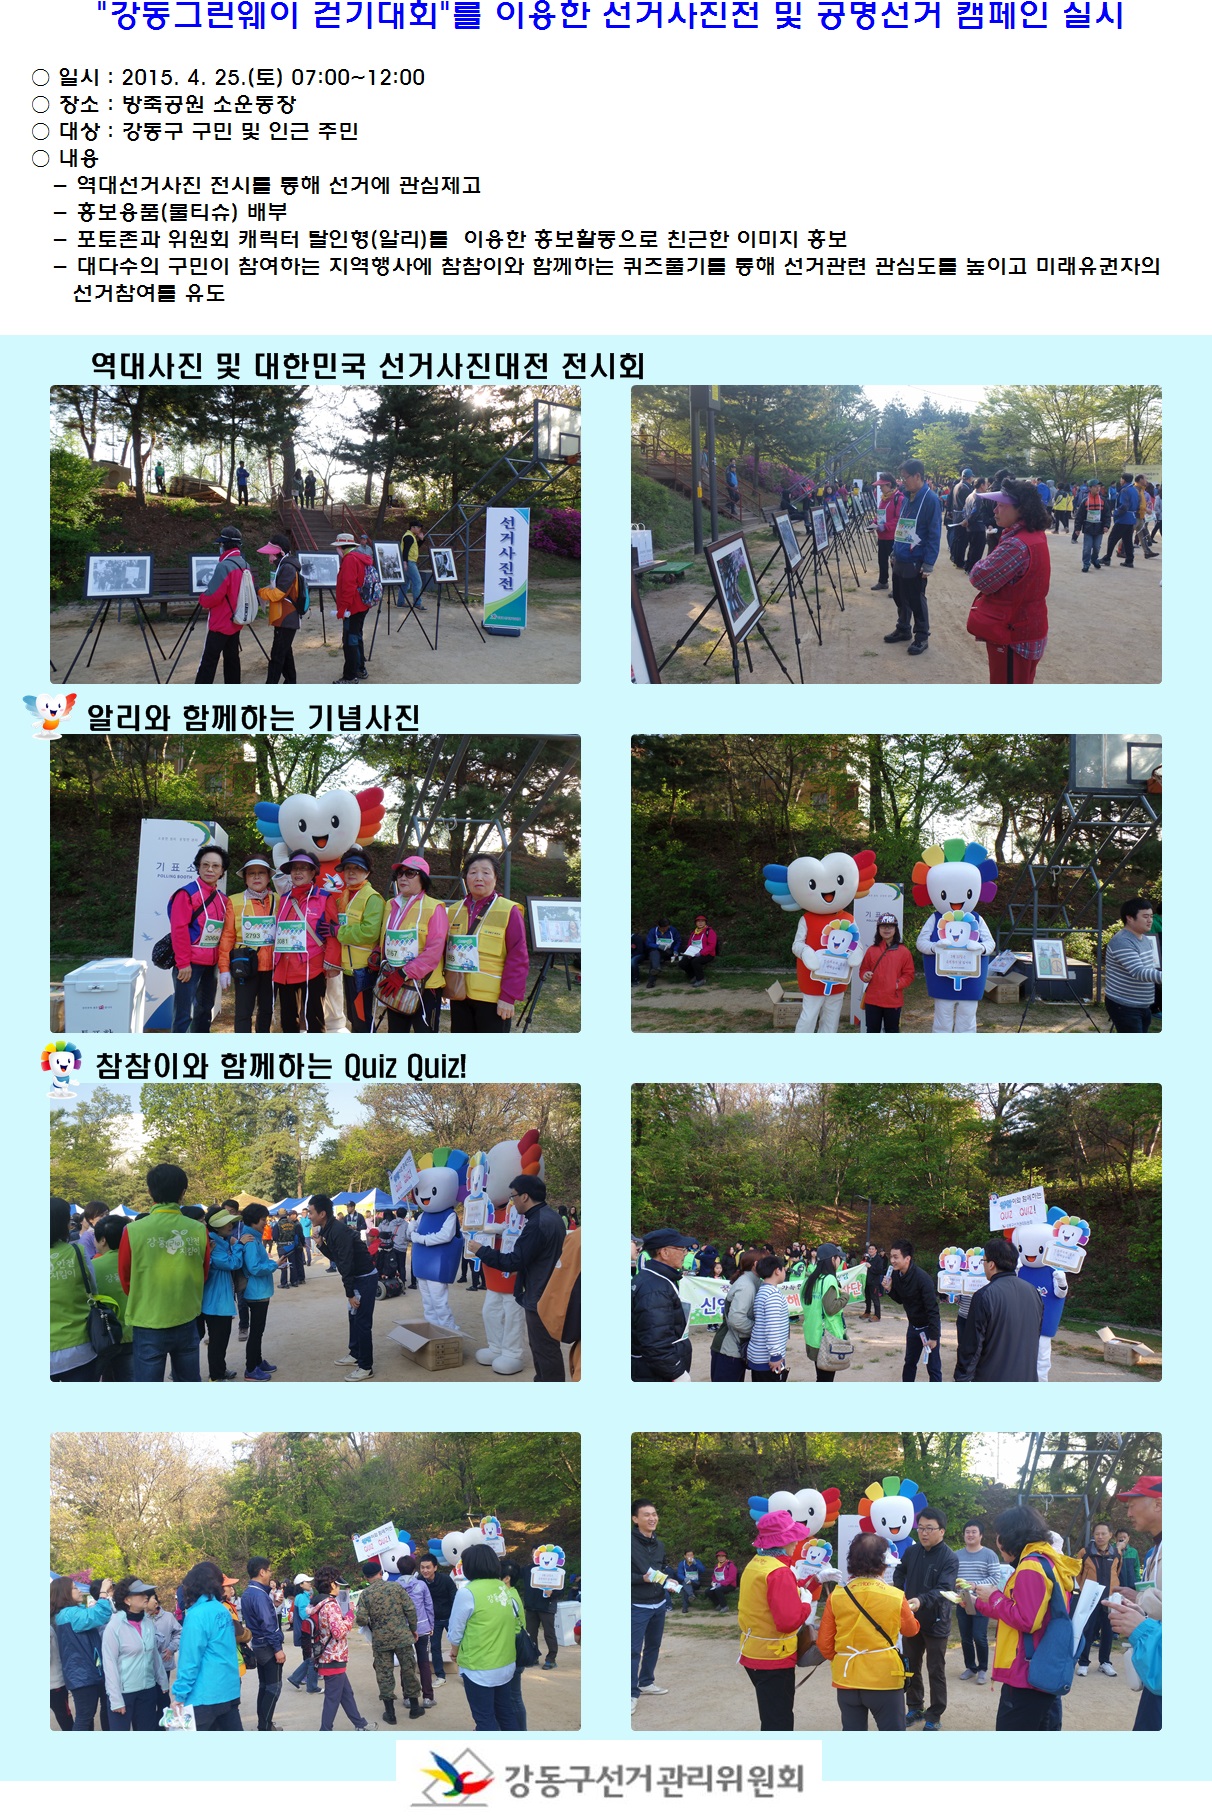 강동그린웨이 걷기대회를 이용한 역대선거사진전 및 공명선거 캠페인 실시